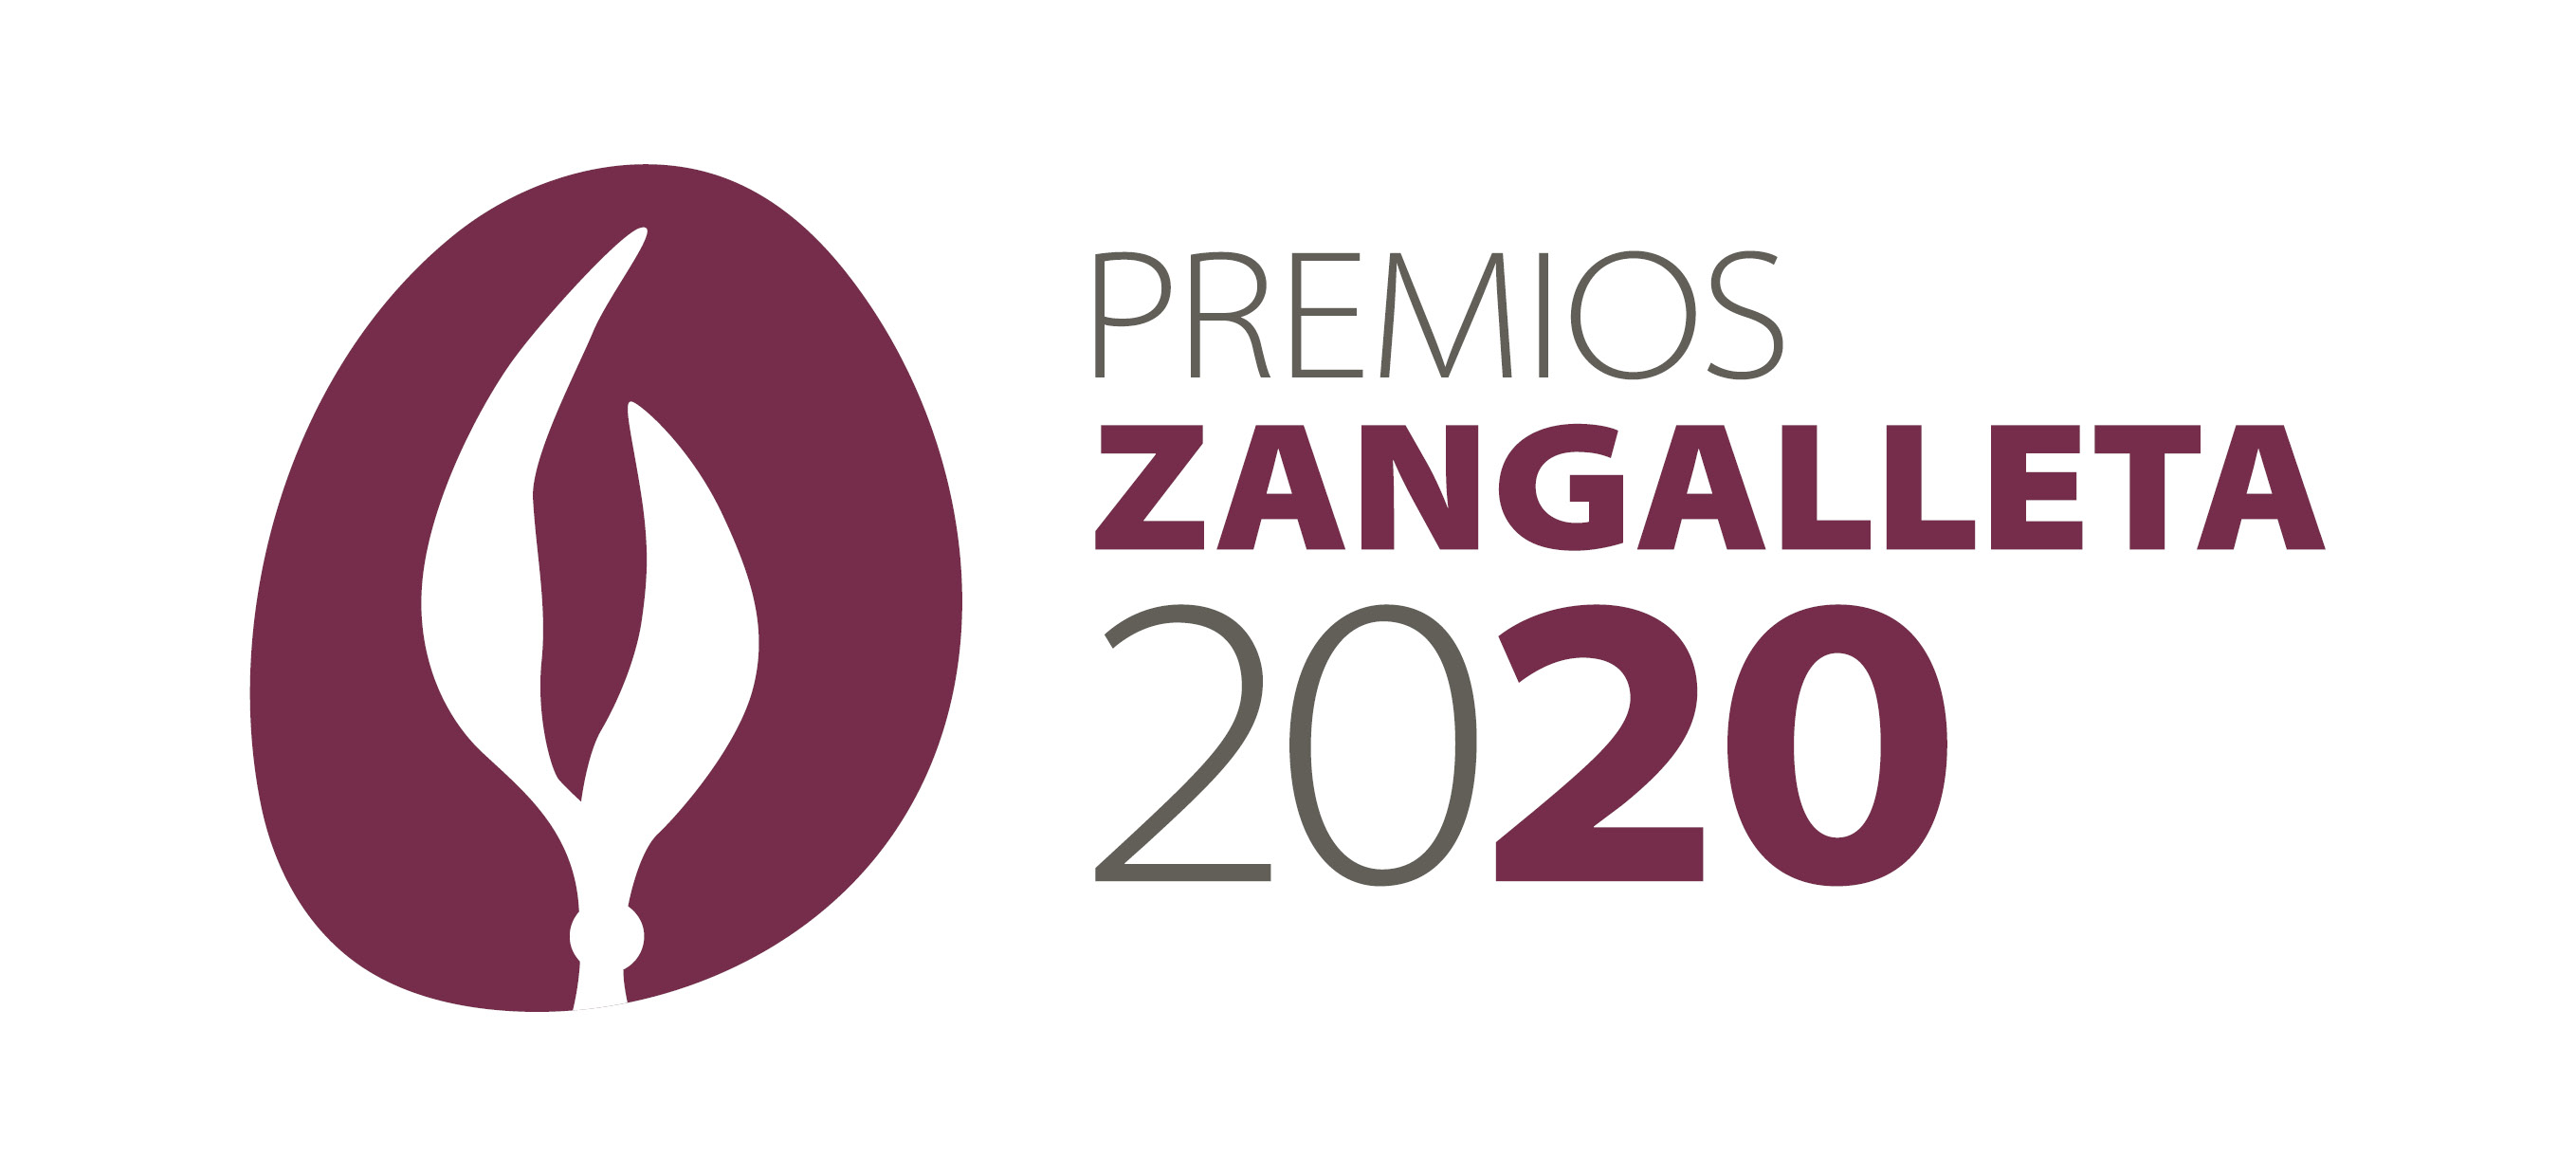 Cartel publicitario donde se lee: Premios Zangalleta 2020 y el icono que representa a estos premios